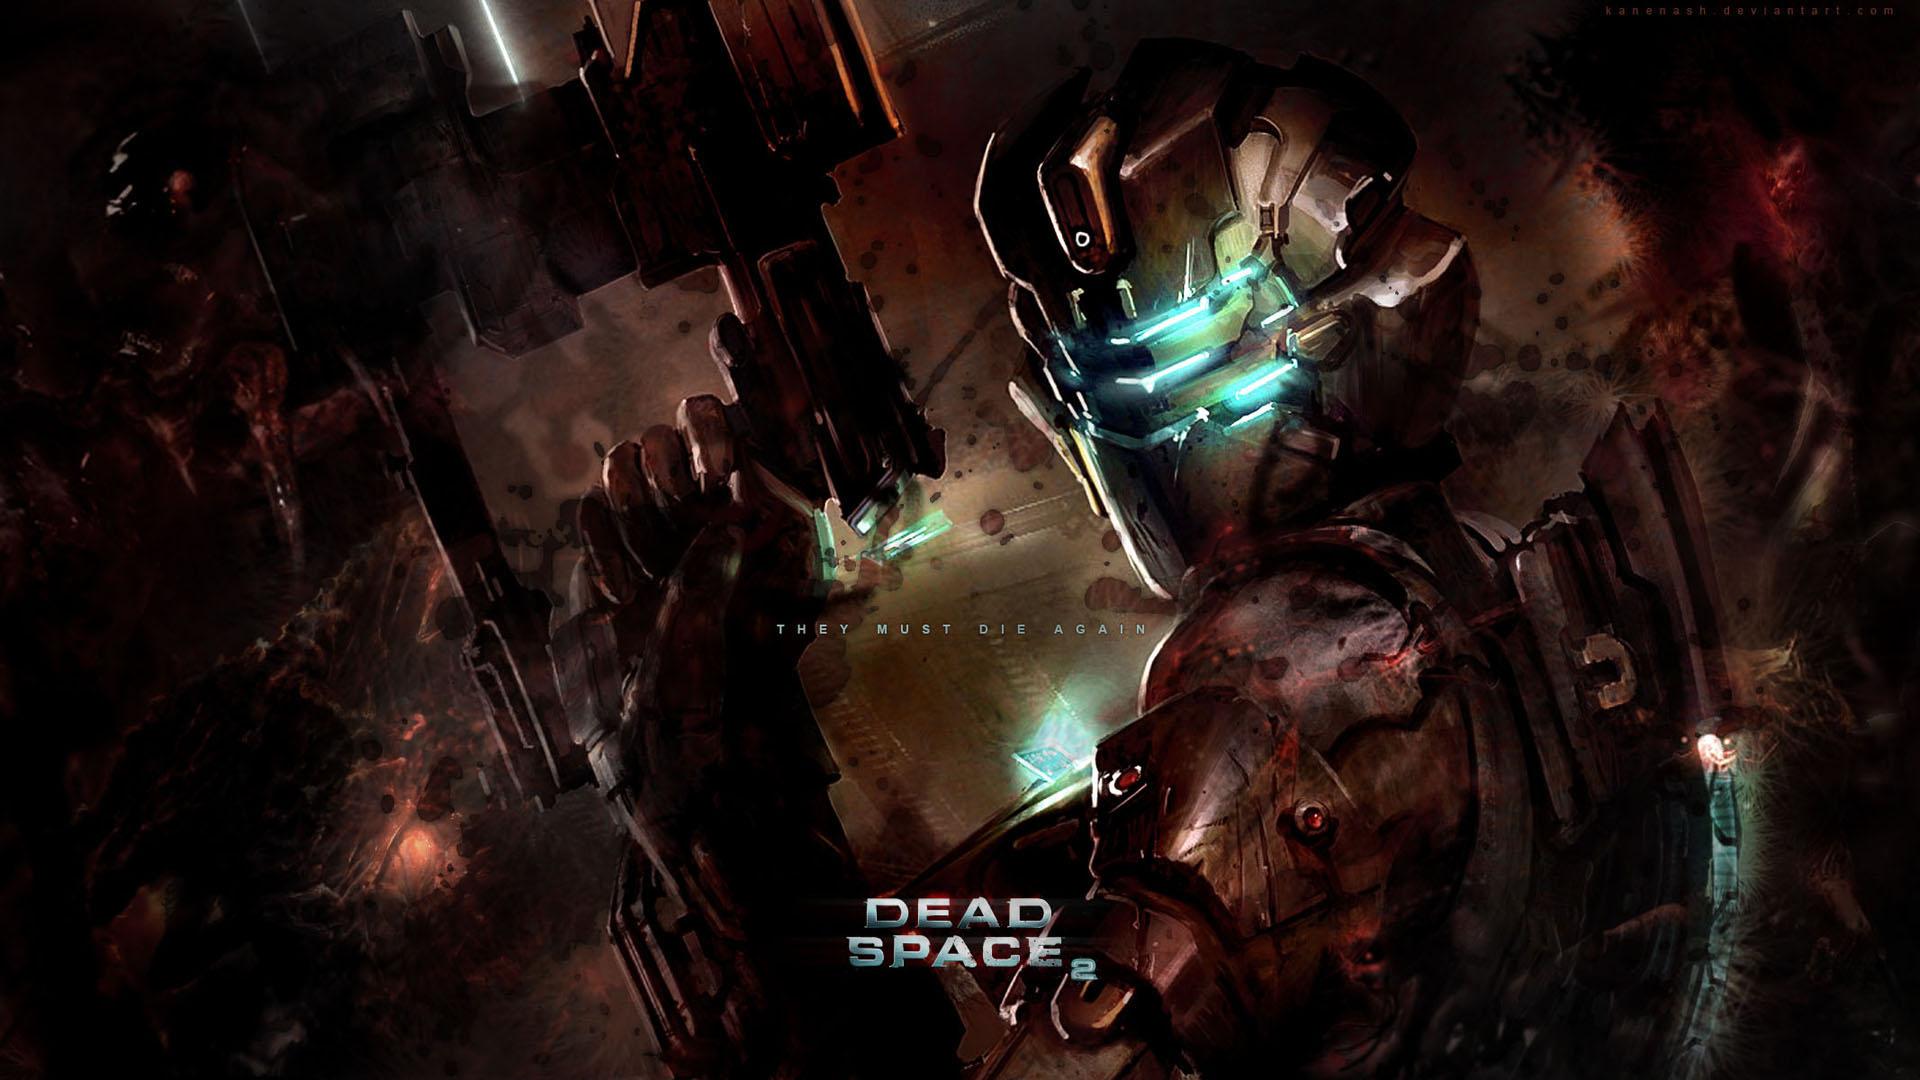 DEAD SPACE 2 WALLPAPER - (#57813) - HD Wallpapers ...